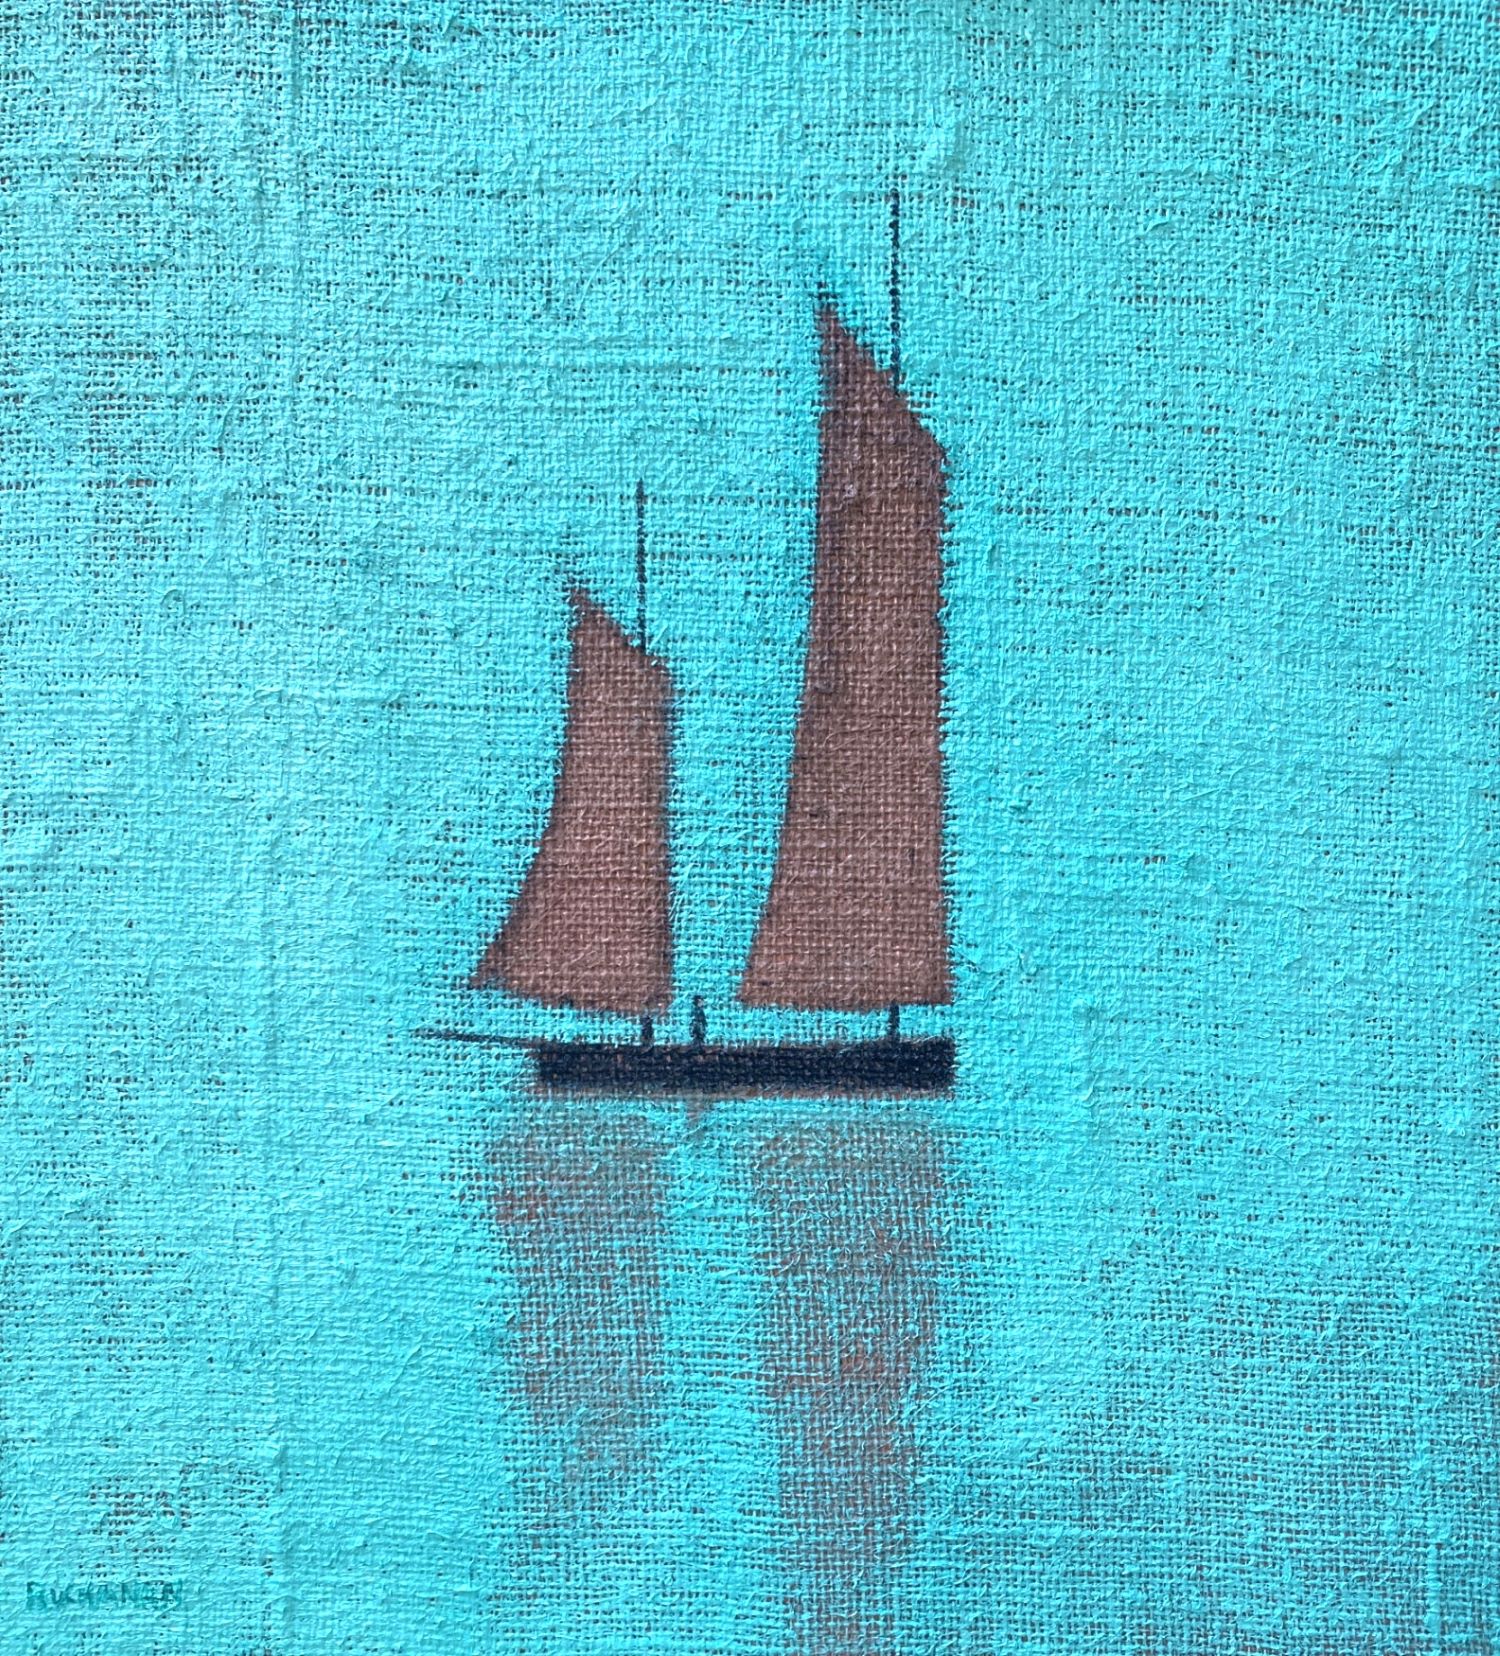 'Sail Away With Me' by artist Stuart Buchanan